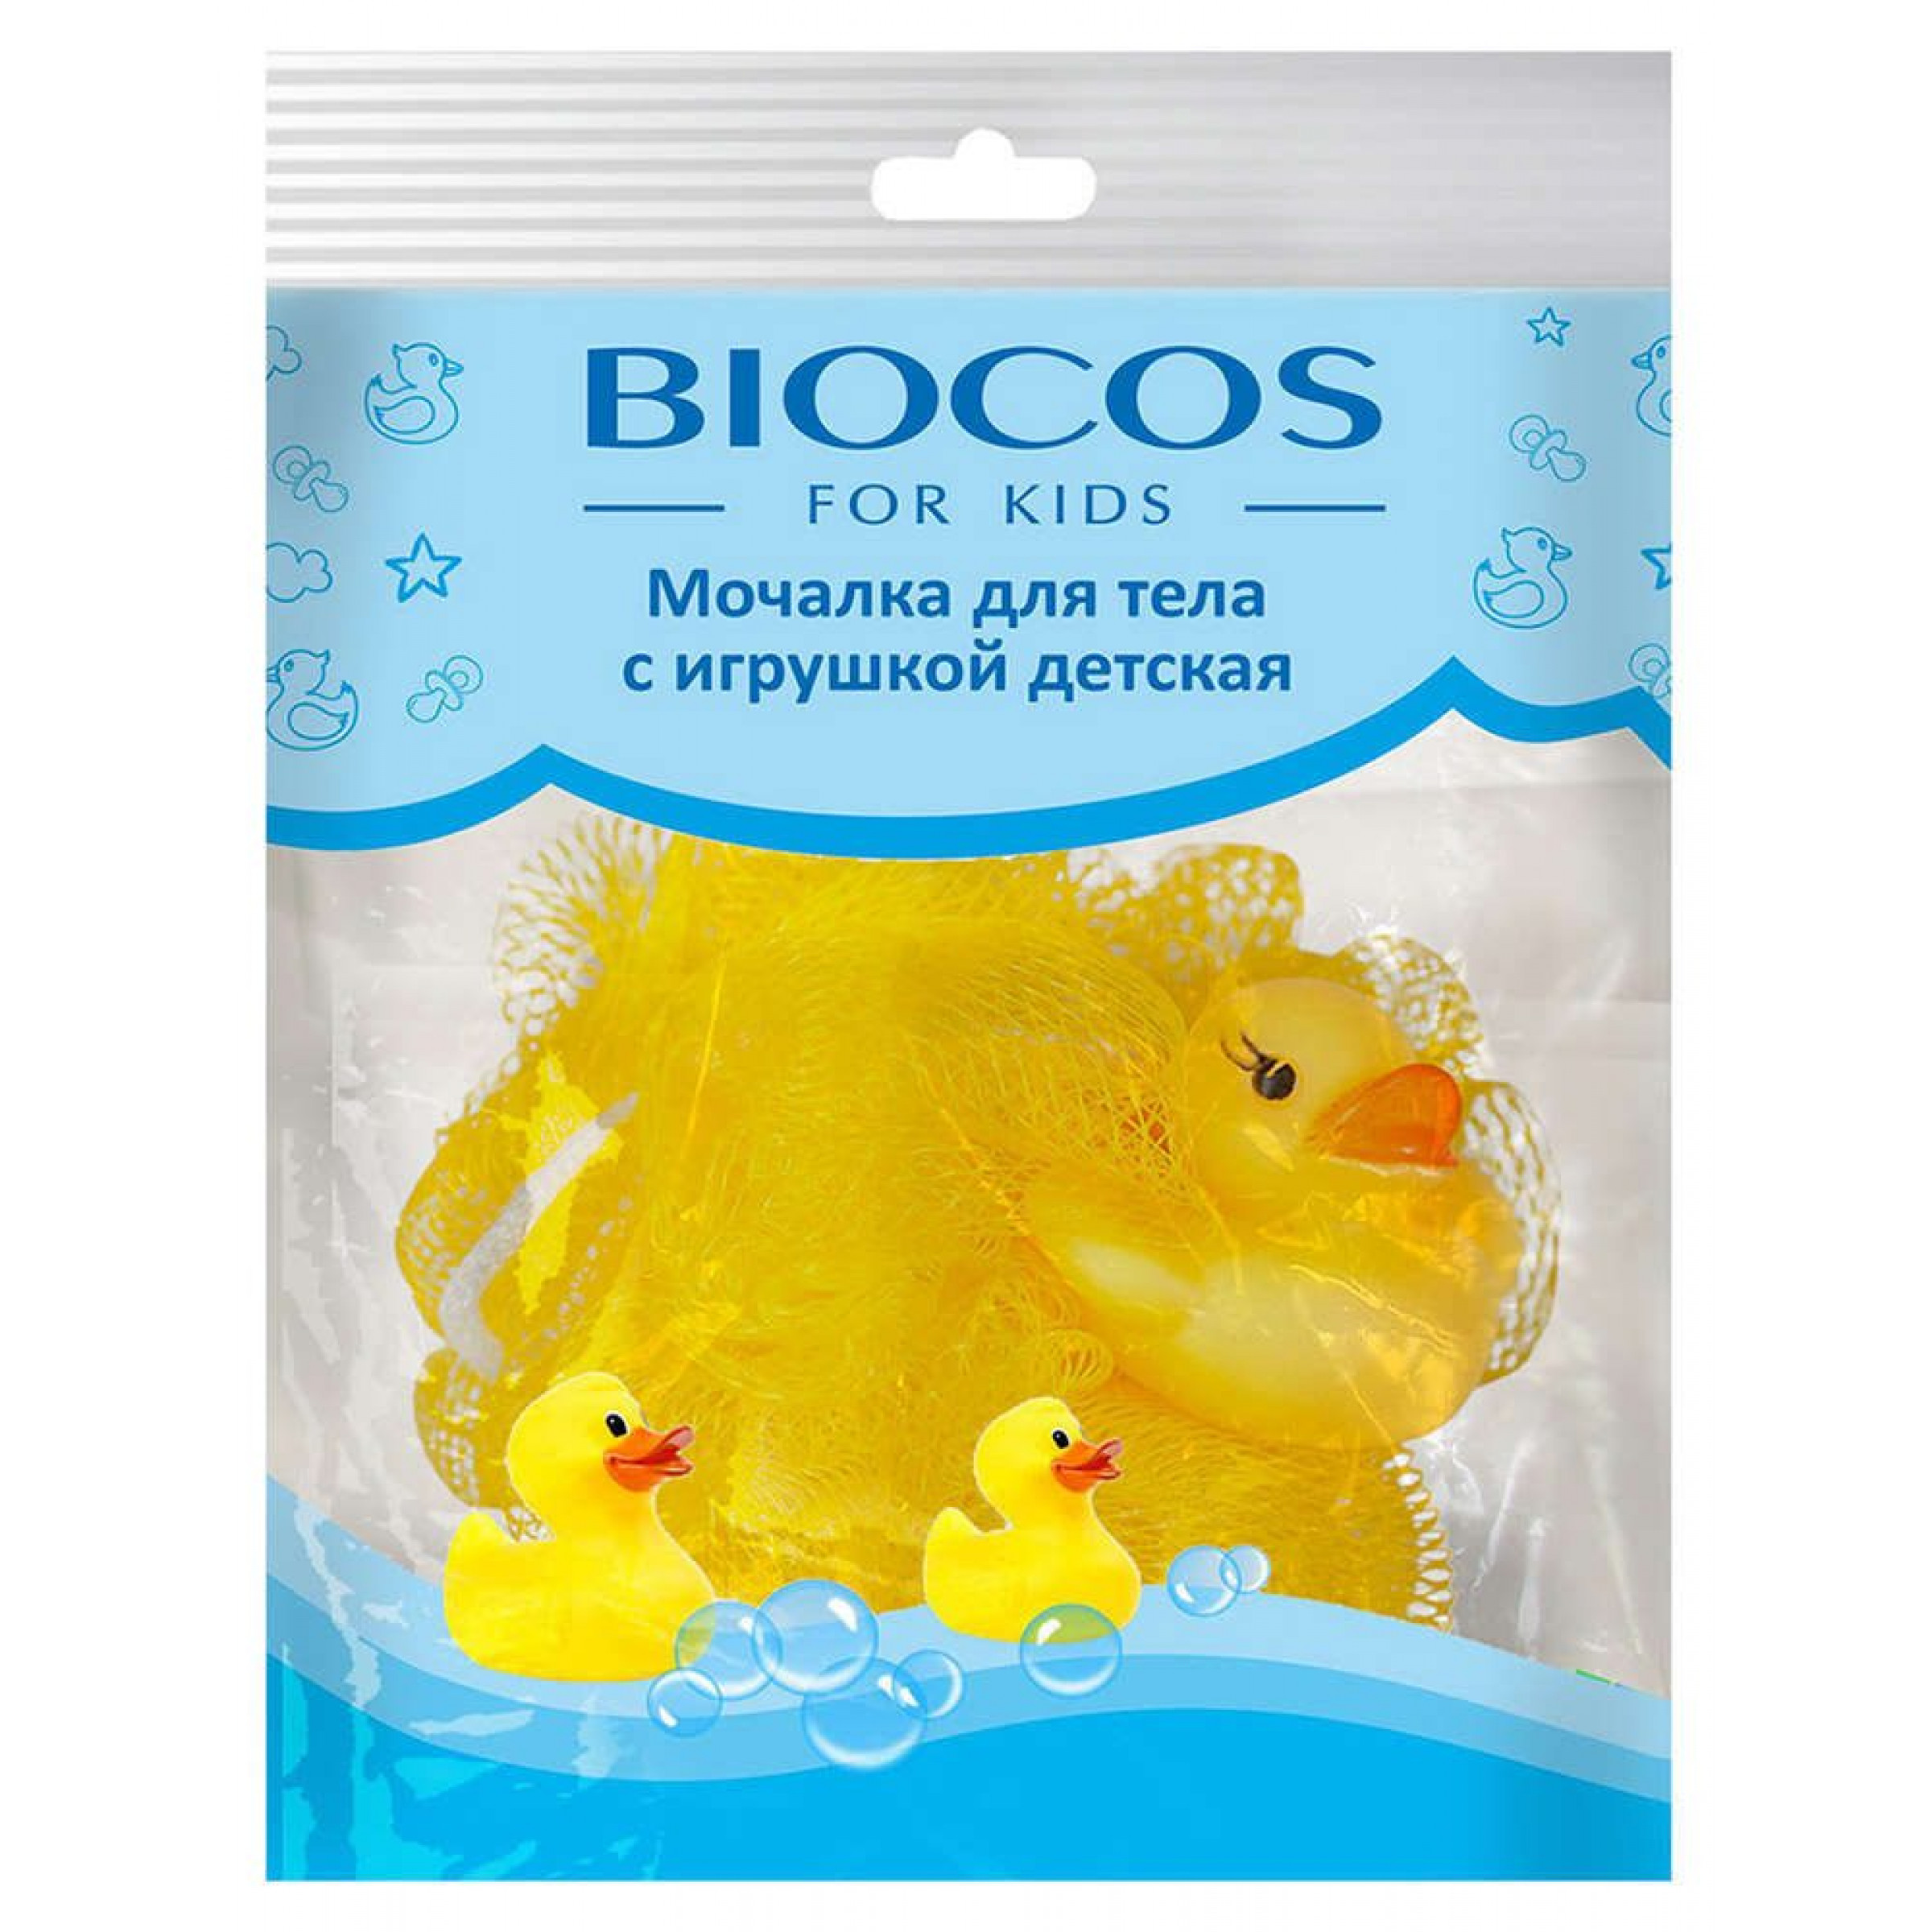 Мочалка для тела с игрушкой детская цвет в ассортименте BioCos, 1шт